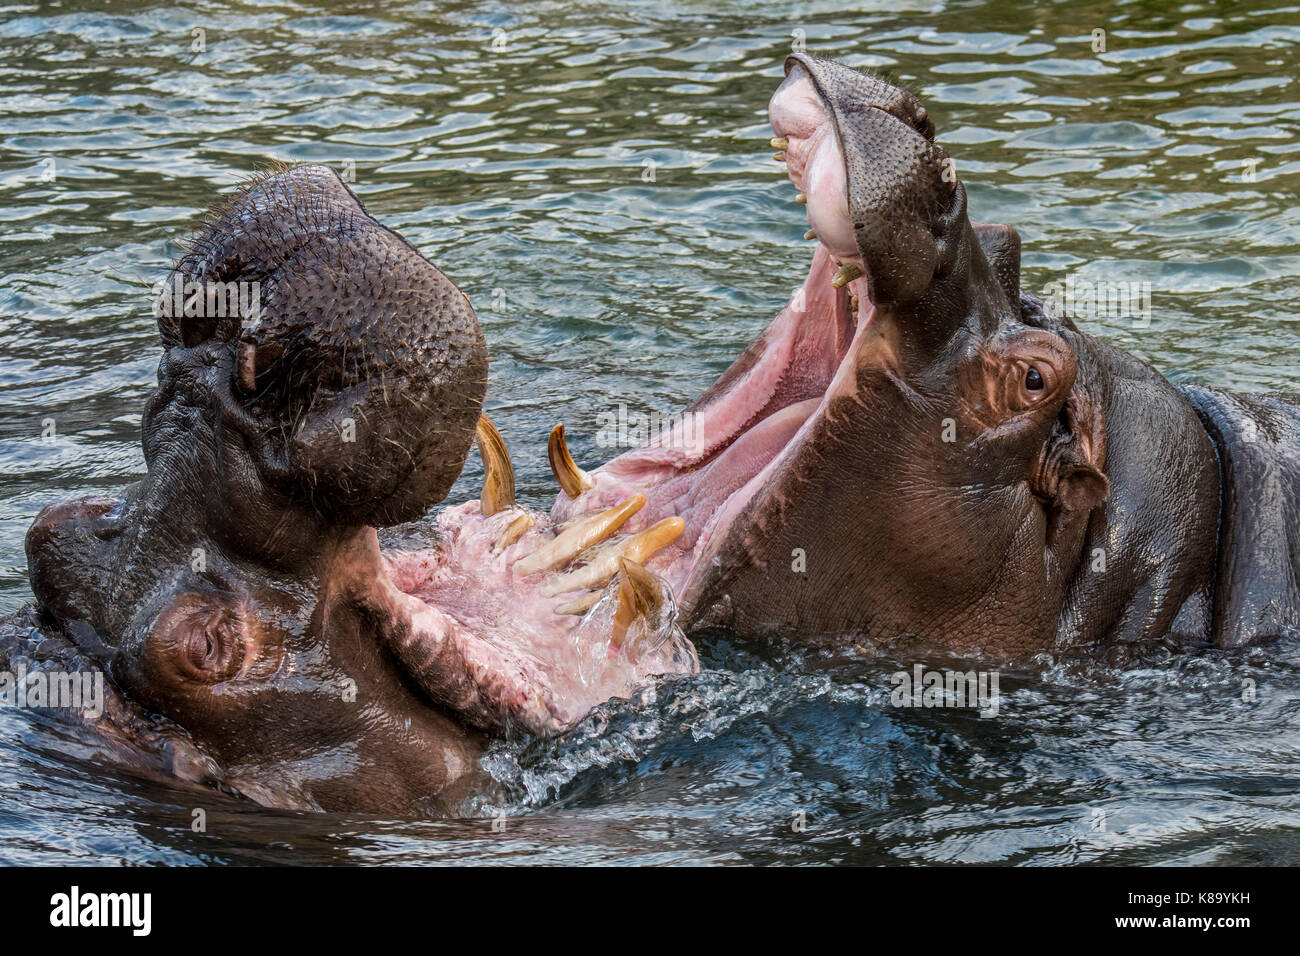 Combattimenti ippopotami / ippopotami (Hippopotamus amphibius) nel lago che mostra denti enormi e grandi zanne canino in ampia bocca aperta Foto Stock